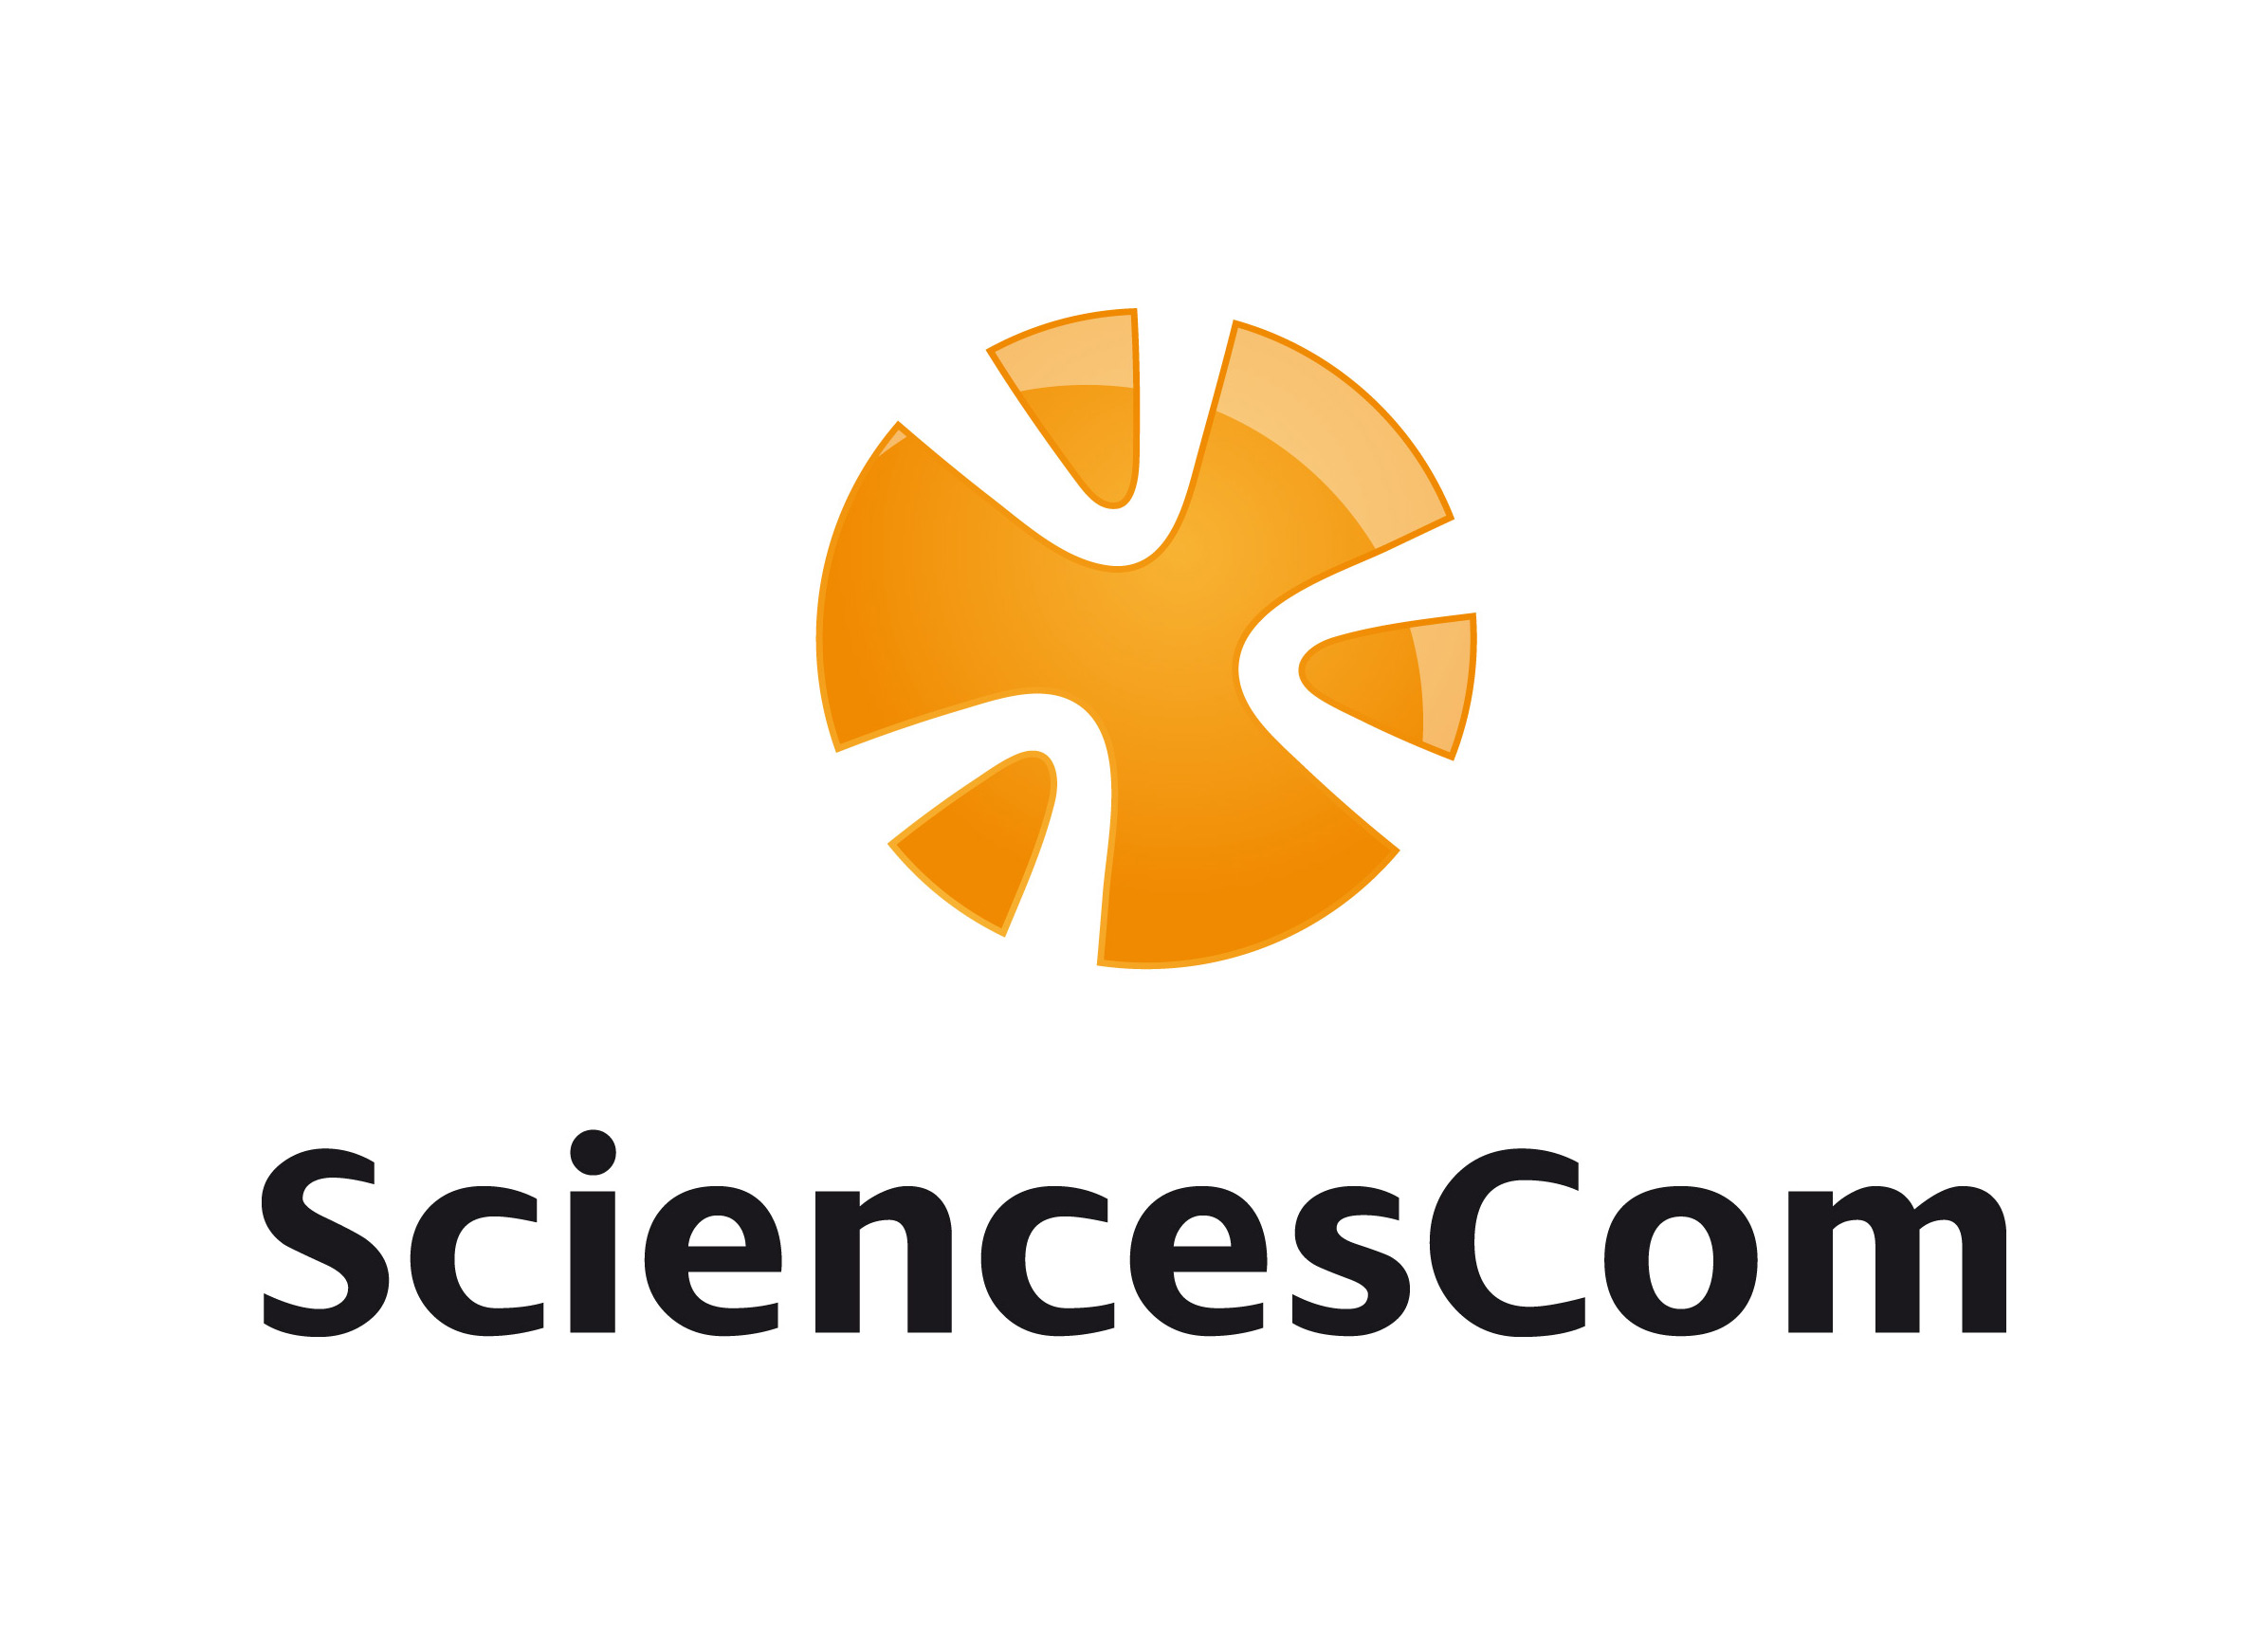 Logo SciencesCom